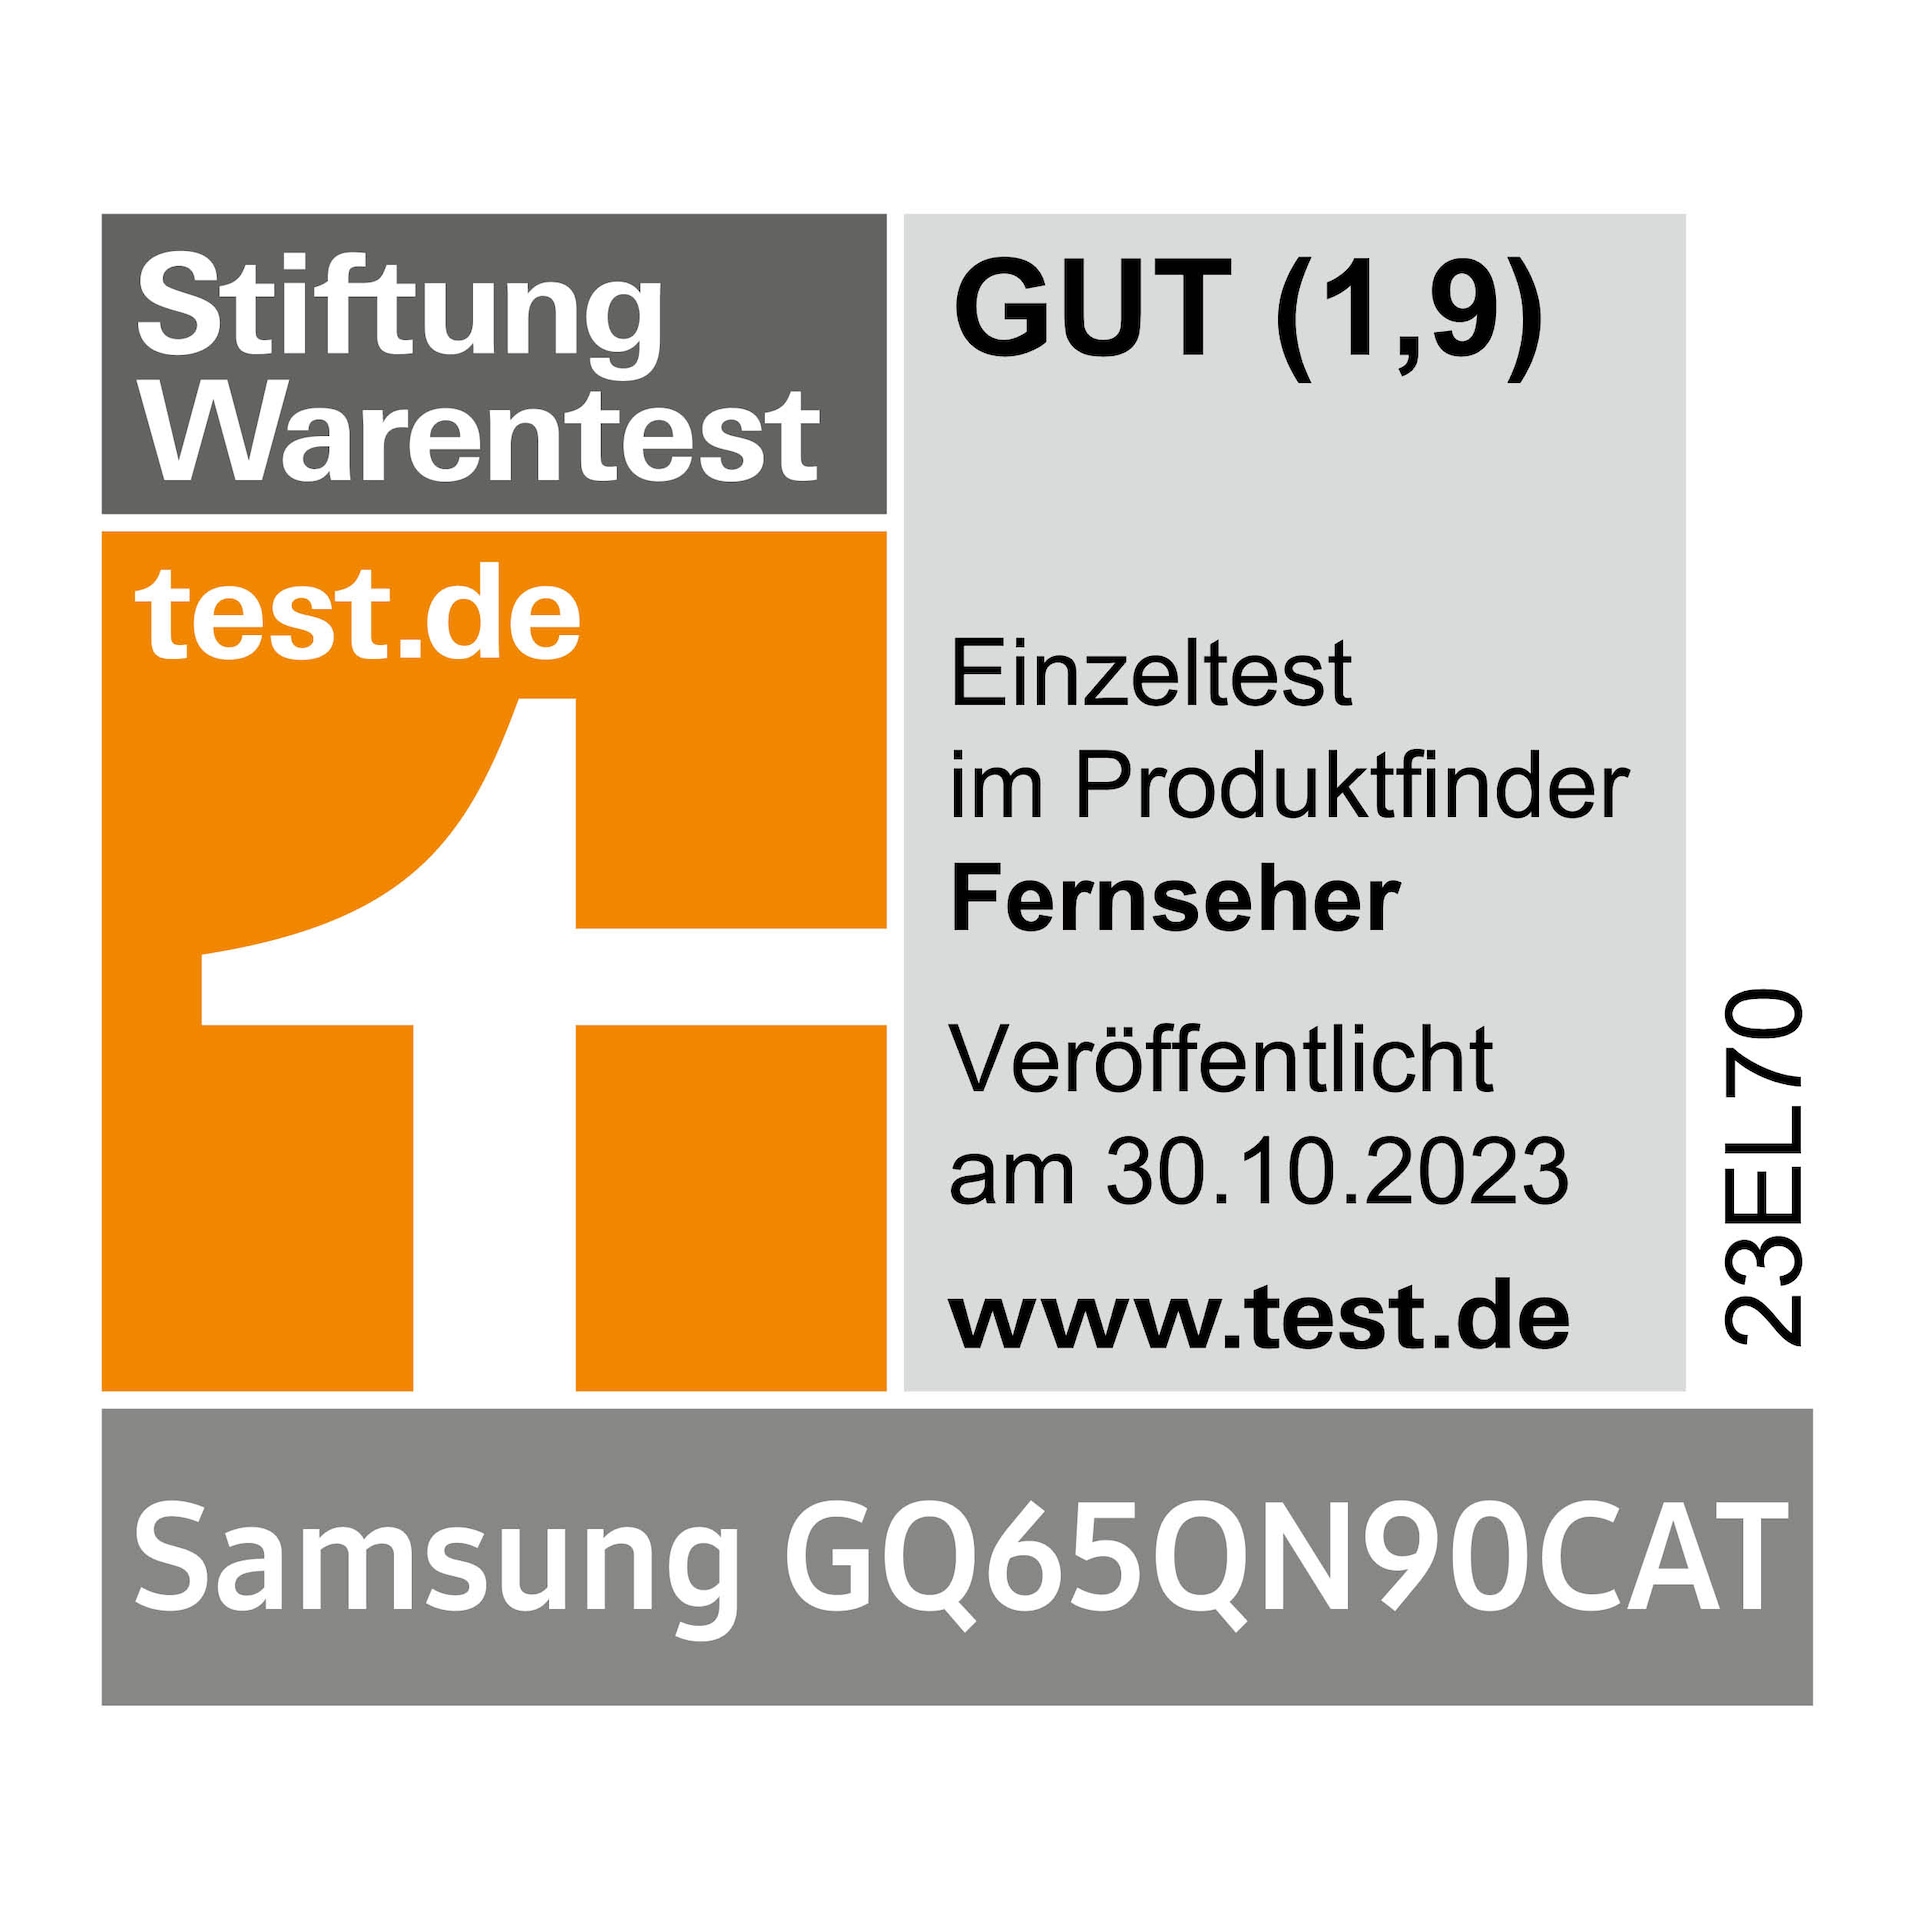 Stiftung Warentest, gut (1,9), test.de, veröffentlicht am 30.10.2023, zum Samsung GQ65QN90CAT, Einzeltest.